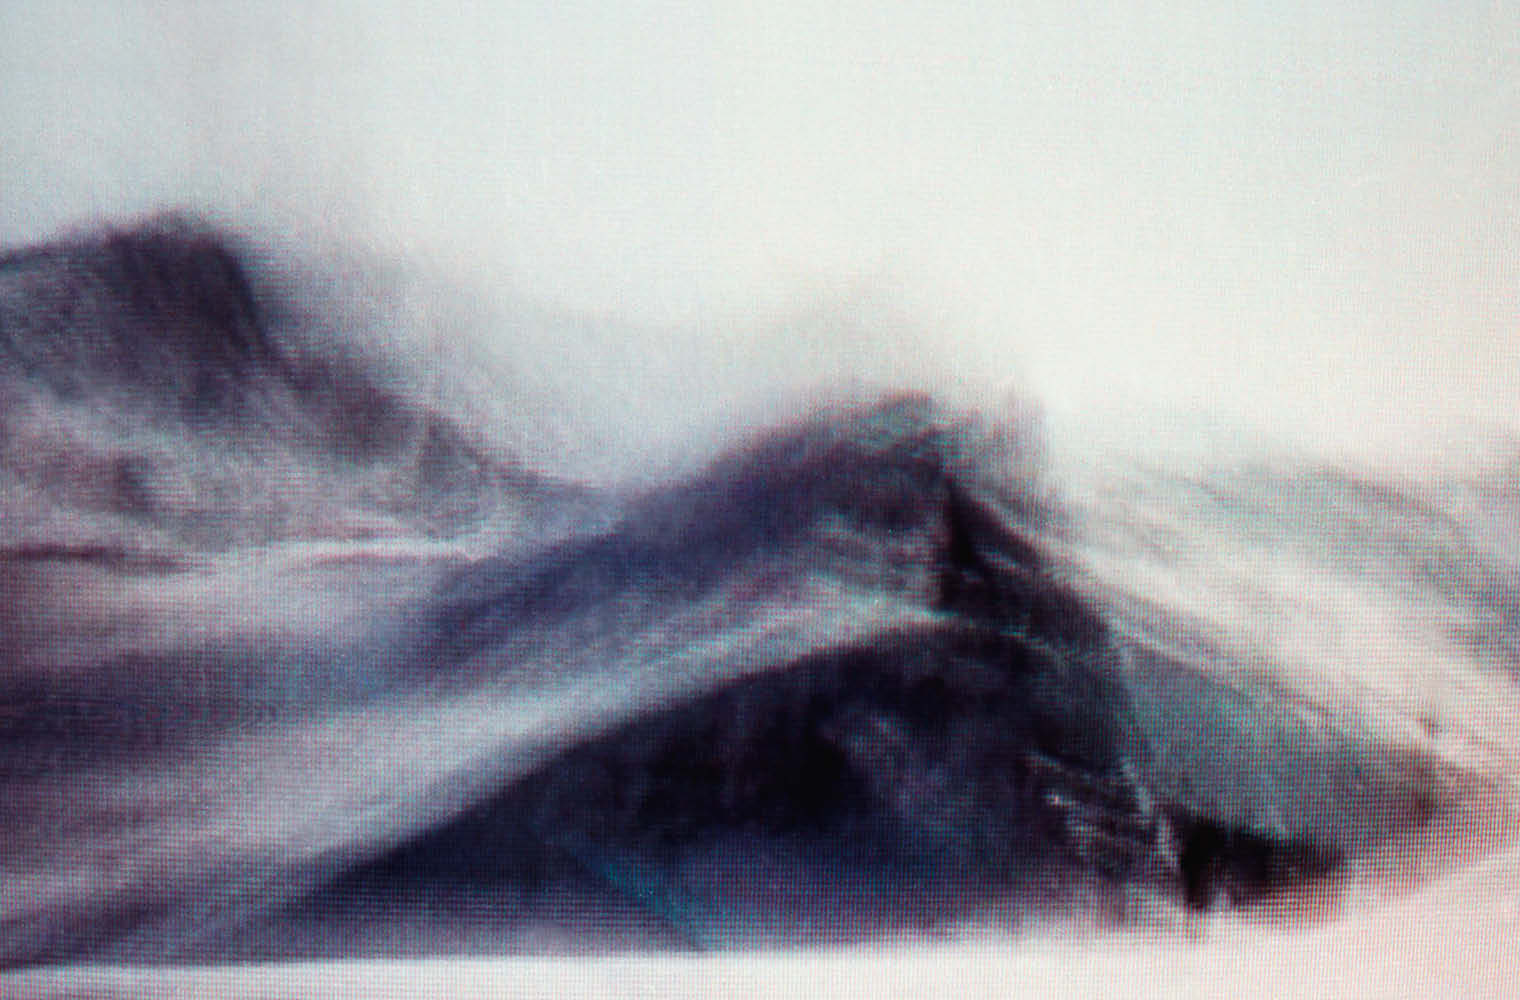 Ein Bild im Videostil zeigt eine Sand- oder Schneedüne, die über einen Gipfel fegt. Der Himmel ist weiß.